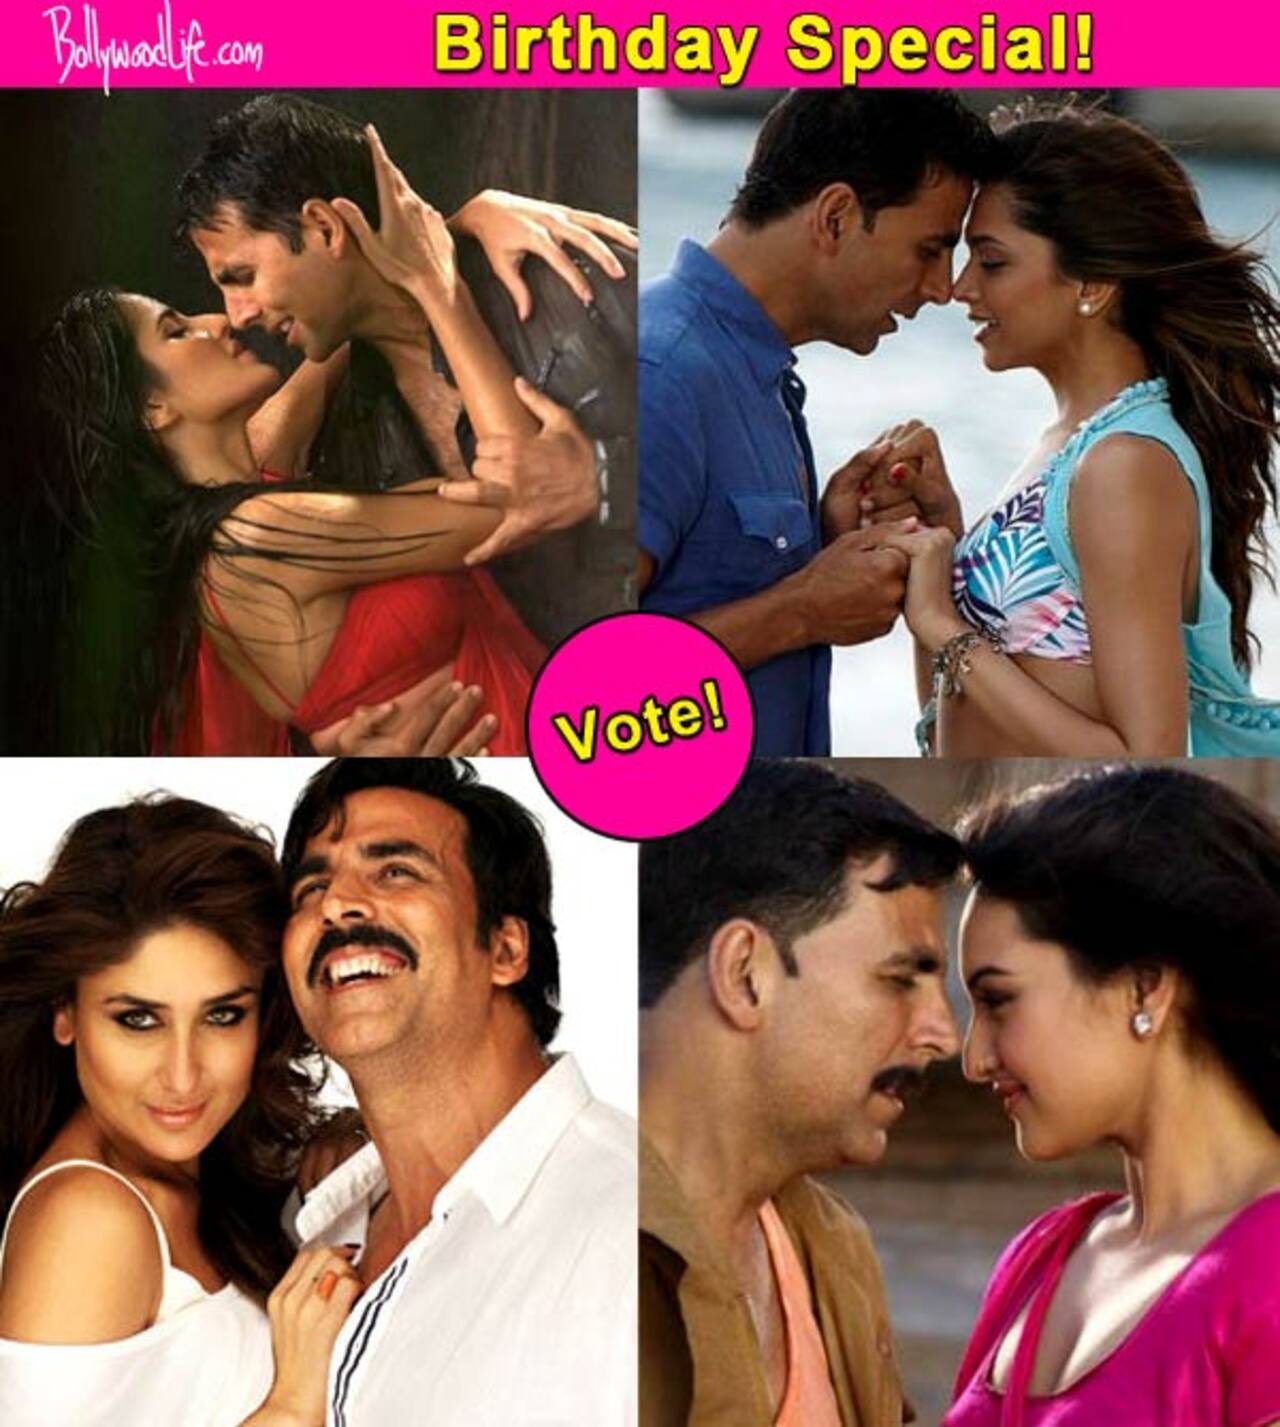 Katrina Kaif, Kareena Kapoor, Priyanka Chopra, Deepika Padukone, Sonakshi Sinha - Who looks good with Akshay Kumar? Vote!